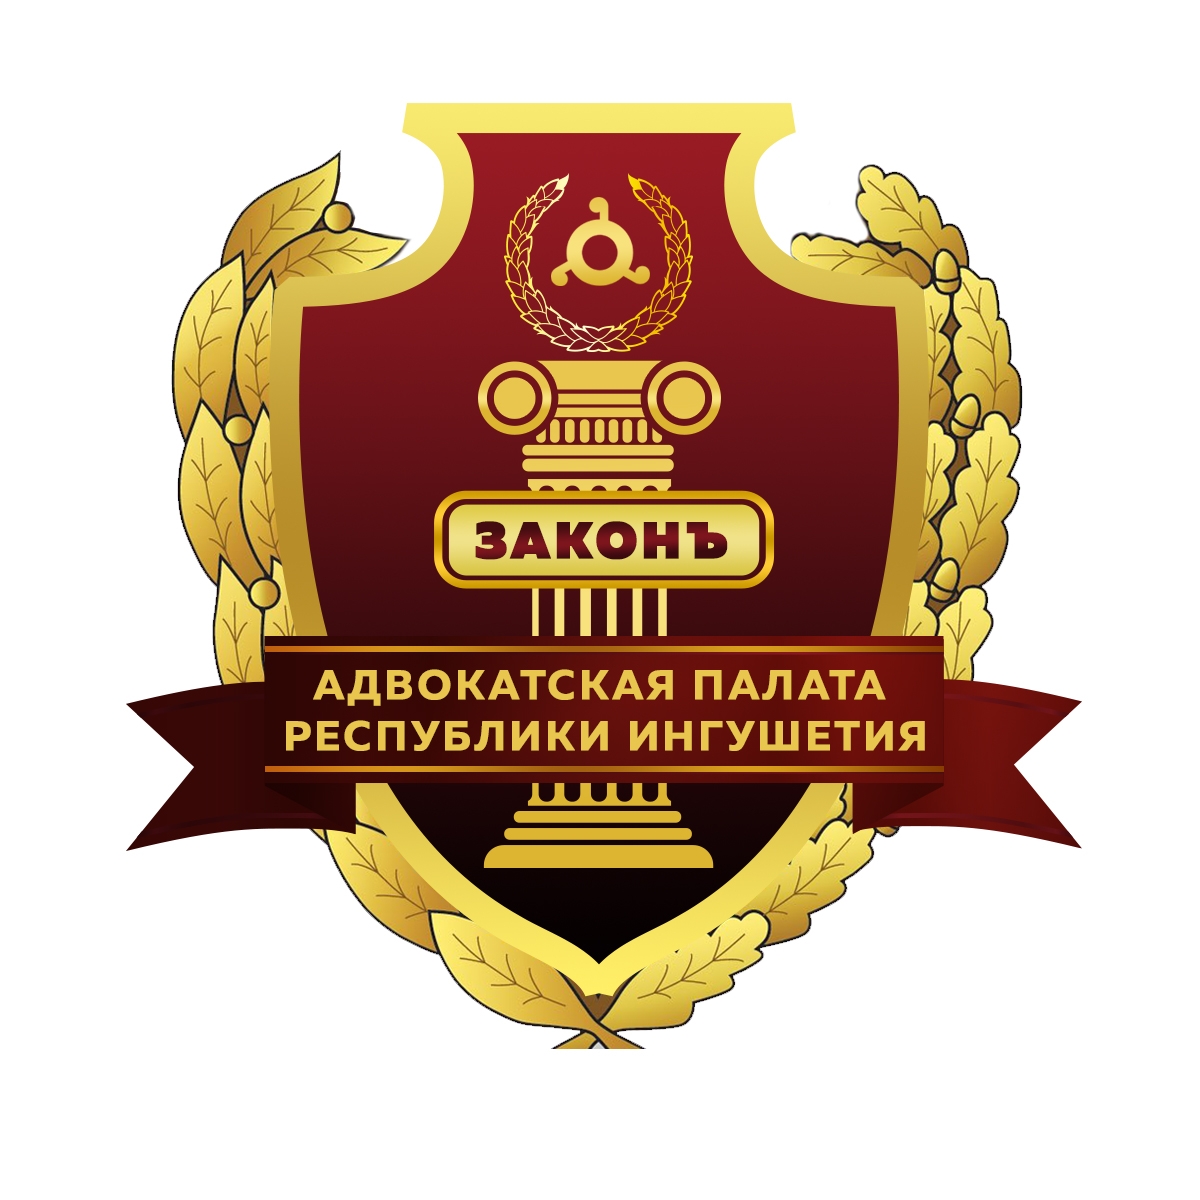 Адвокатская палата Республики Ингушетия